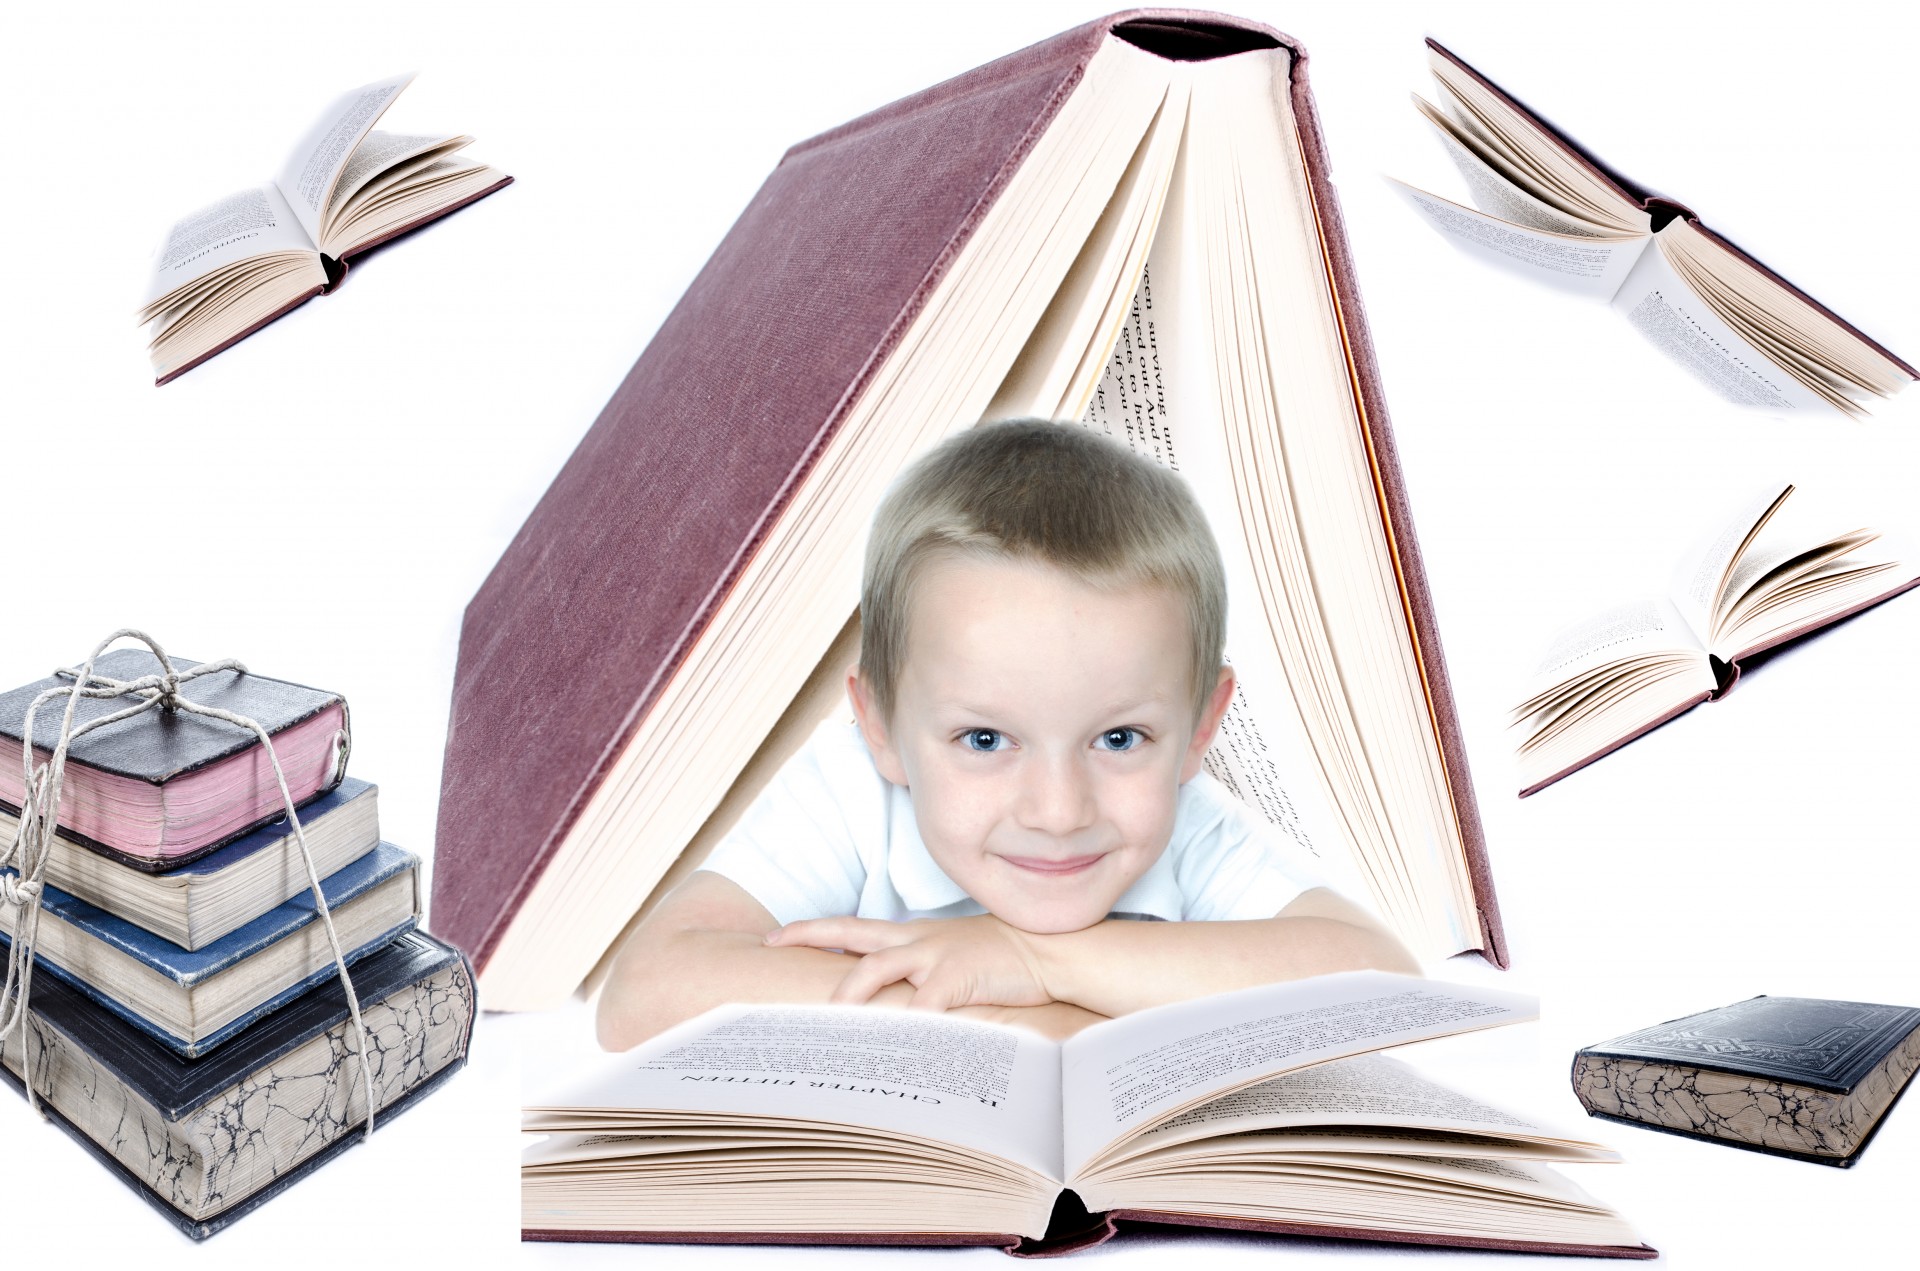 Читать открытая тайна. Книги для детей. Стремление к знаниям. Чтение. Чтение для детей.